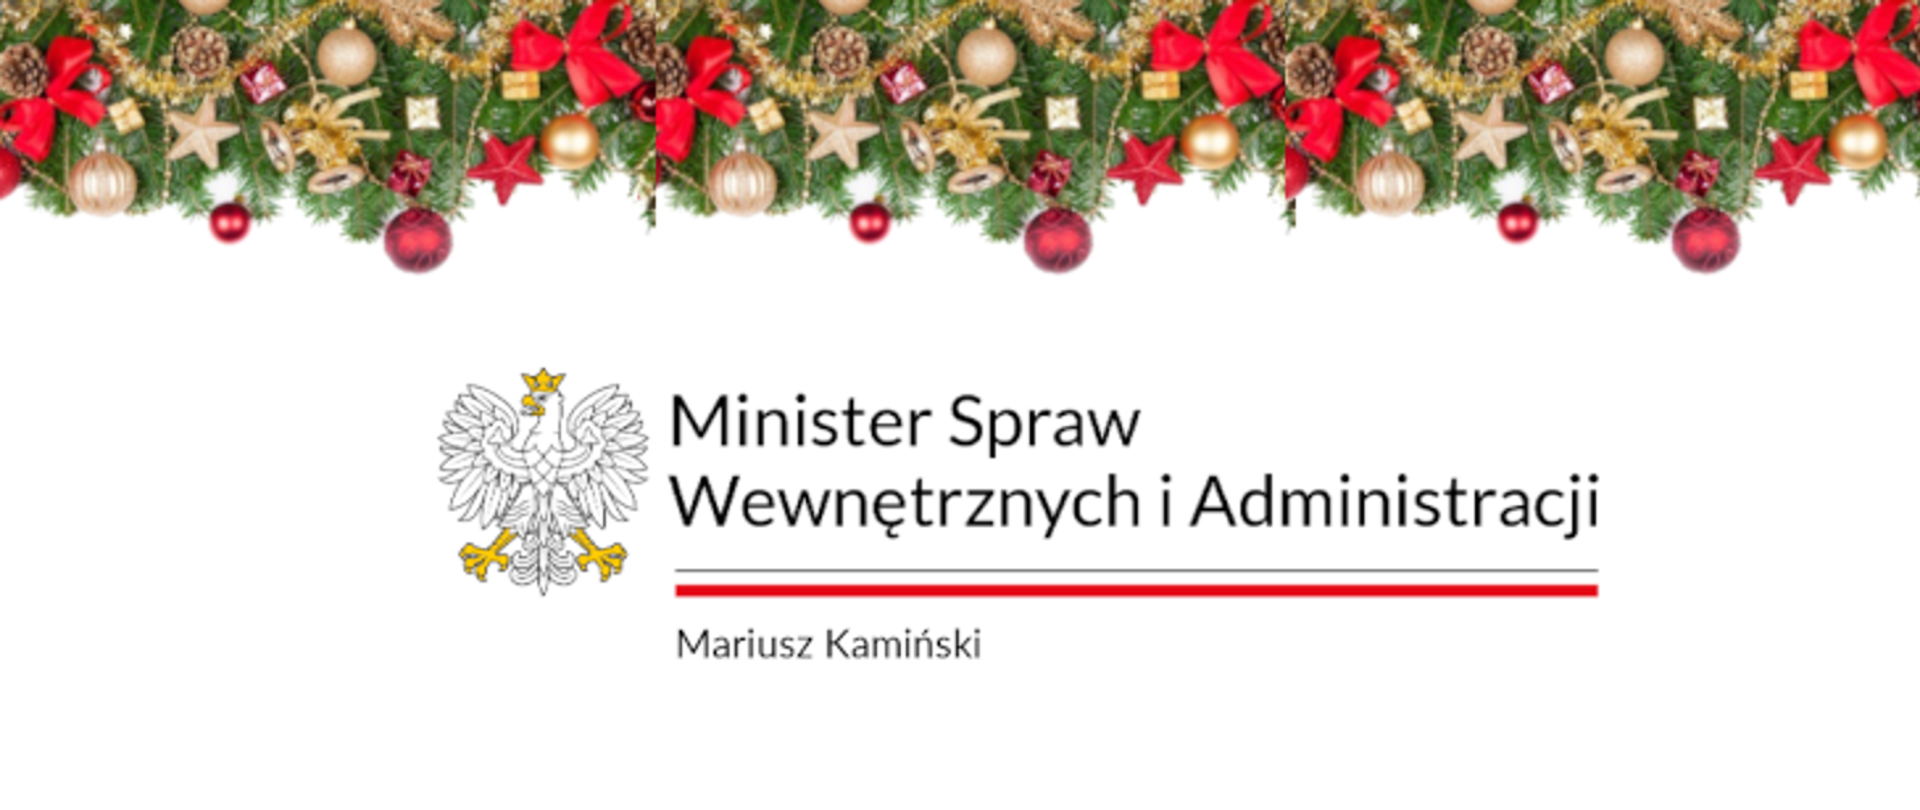 Życzenia Ministra Spraw Wewnętrznych i Administracji z okazji Świąt Bożego Narodzenia